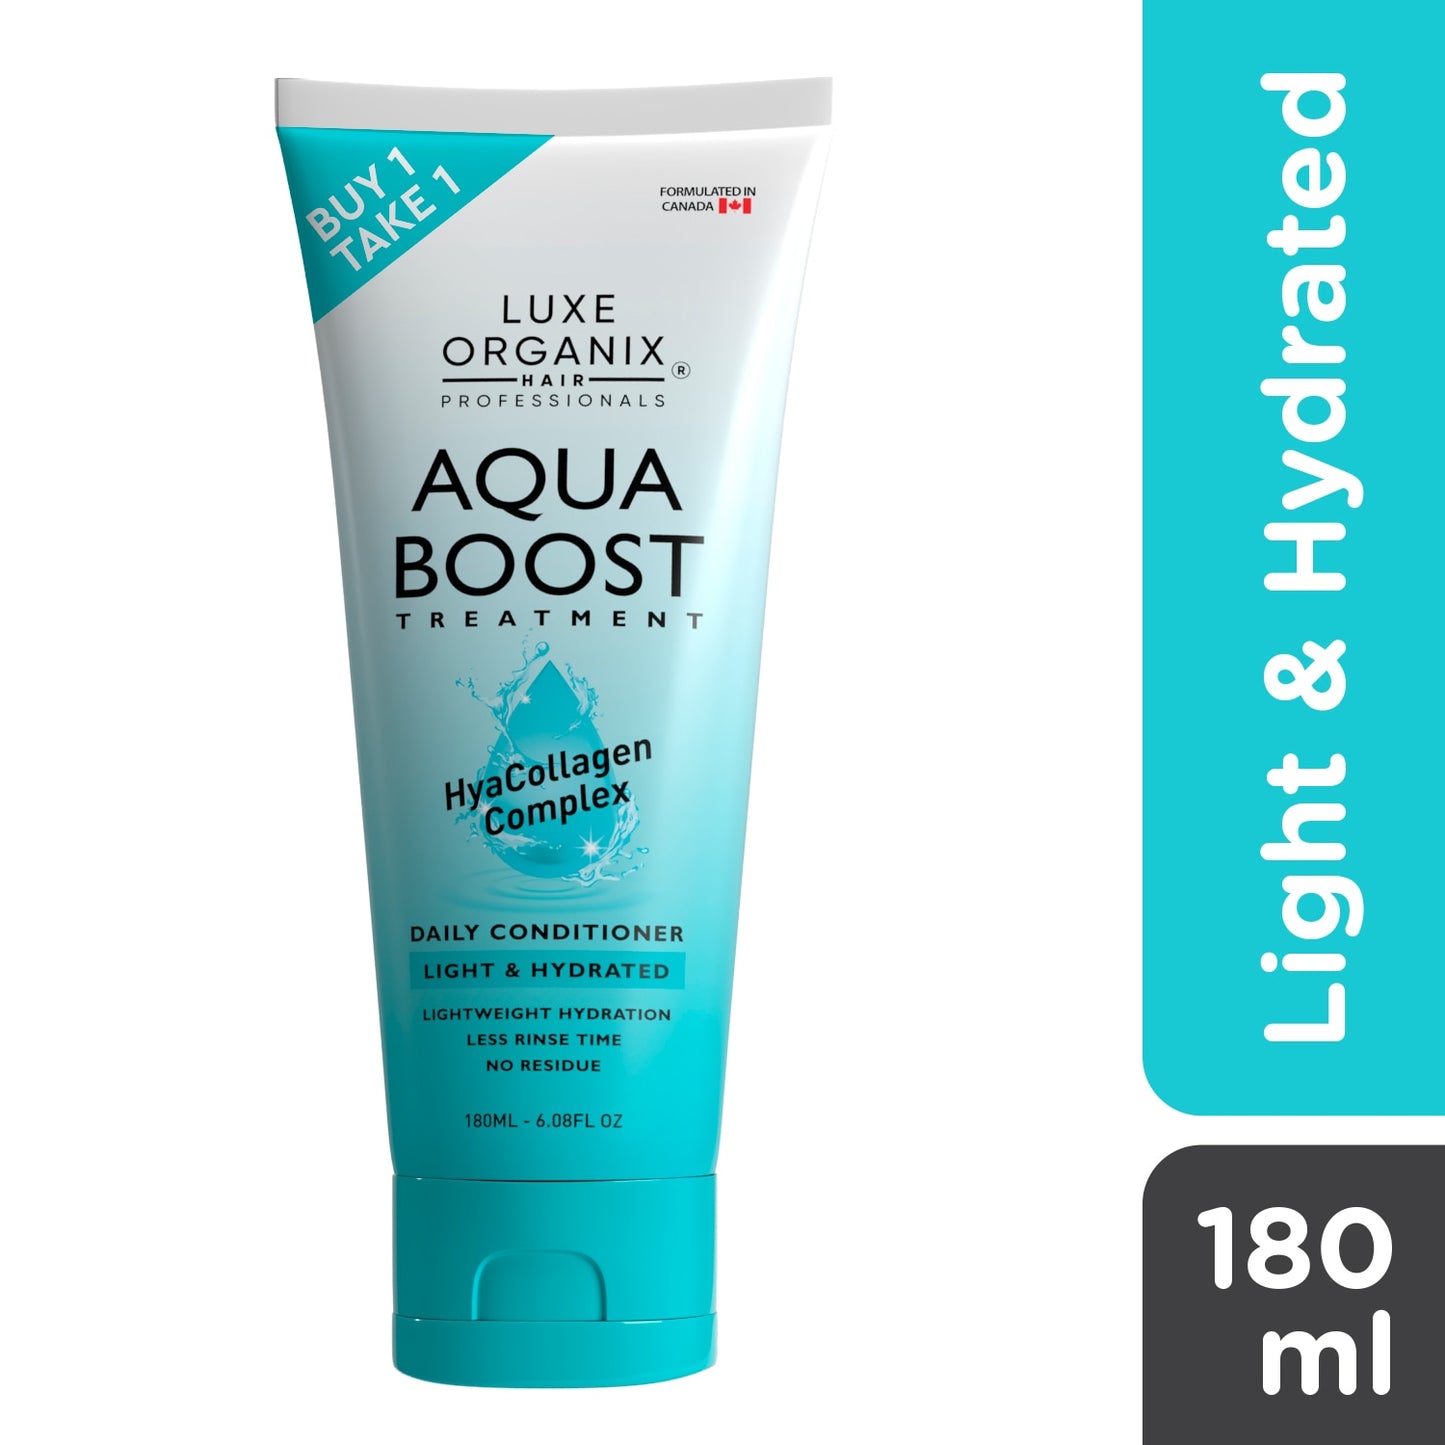 Luxe Organix Aqua Boost Treatment